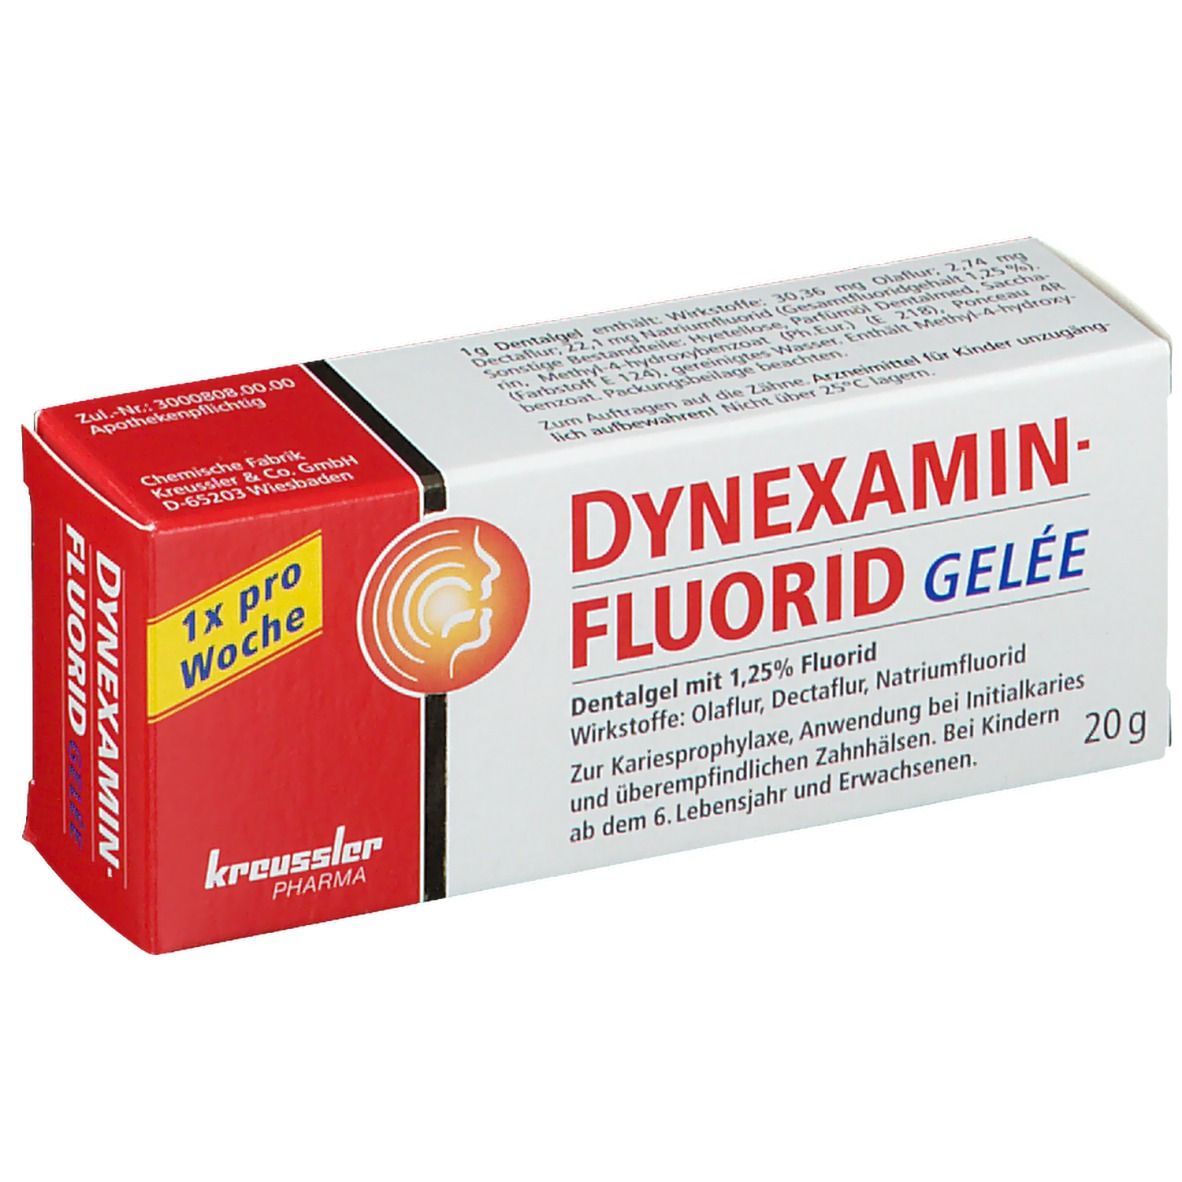 Dynexaminfluorid Gelee Dentalgel